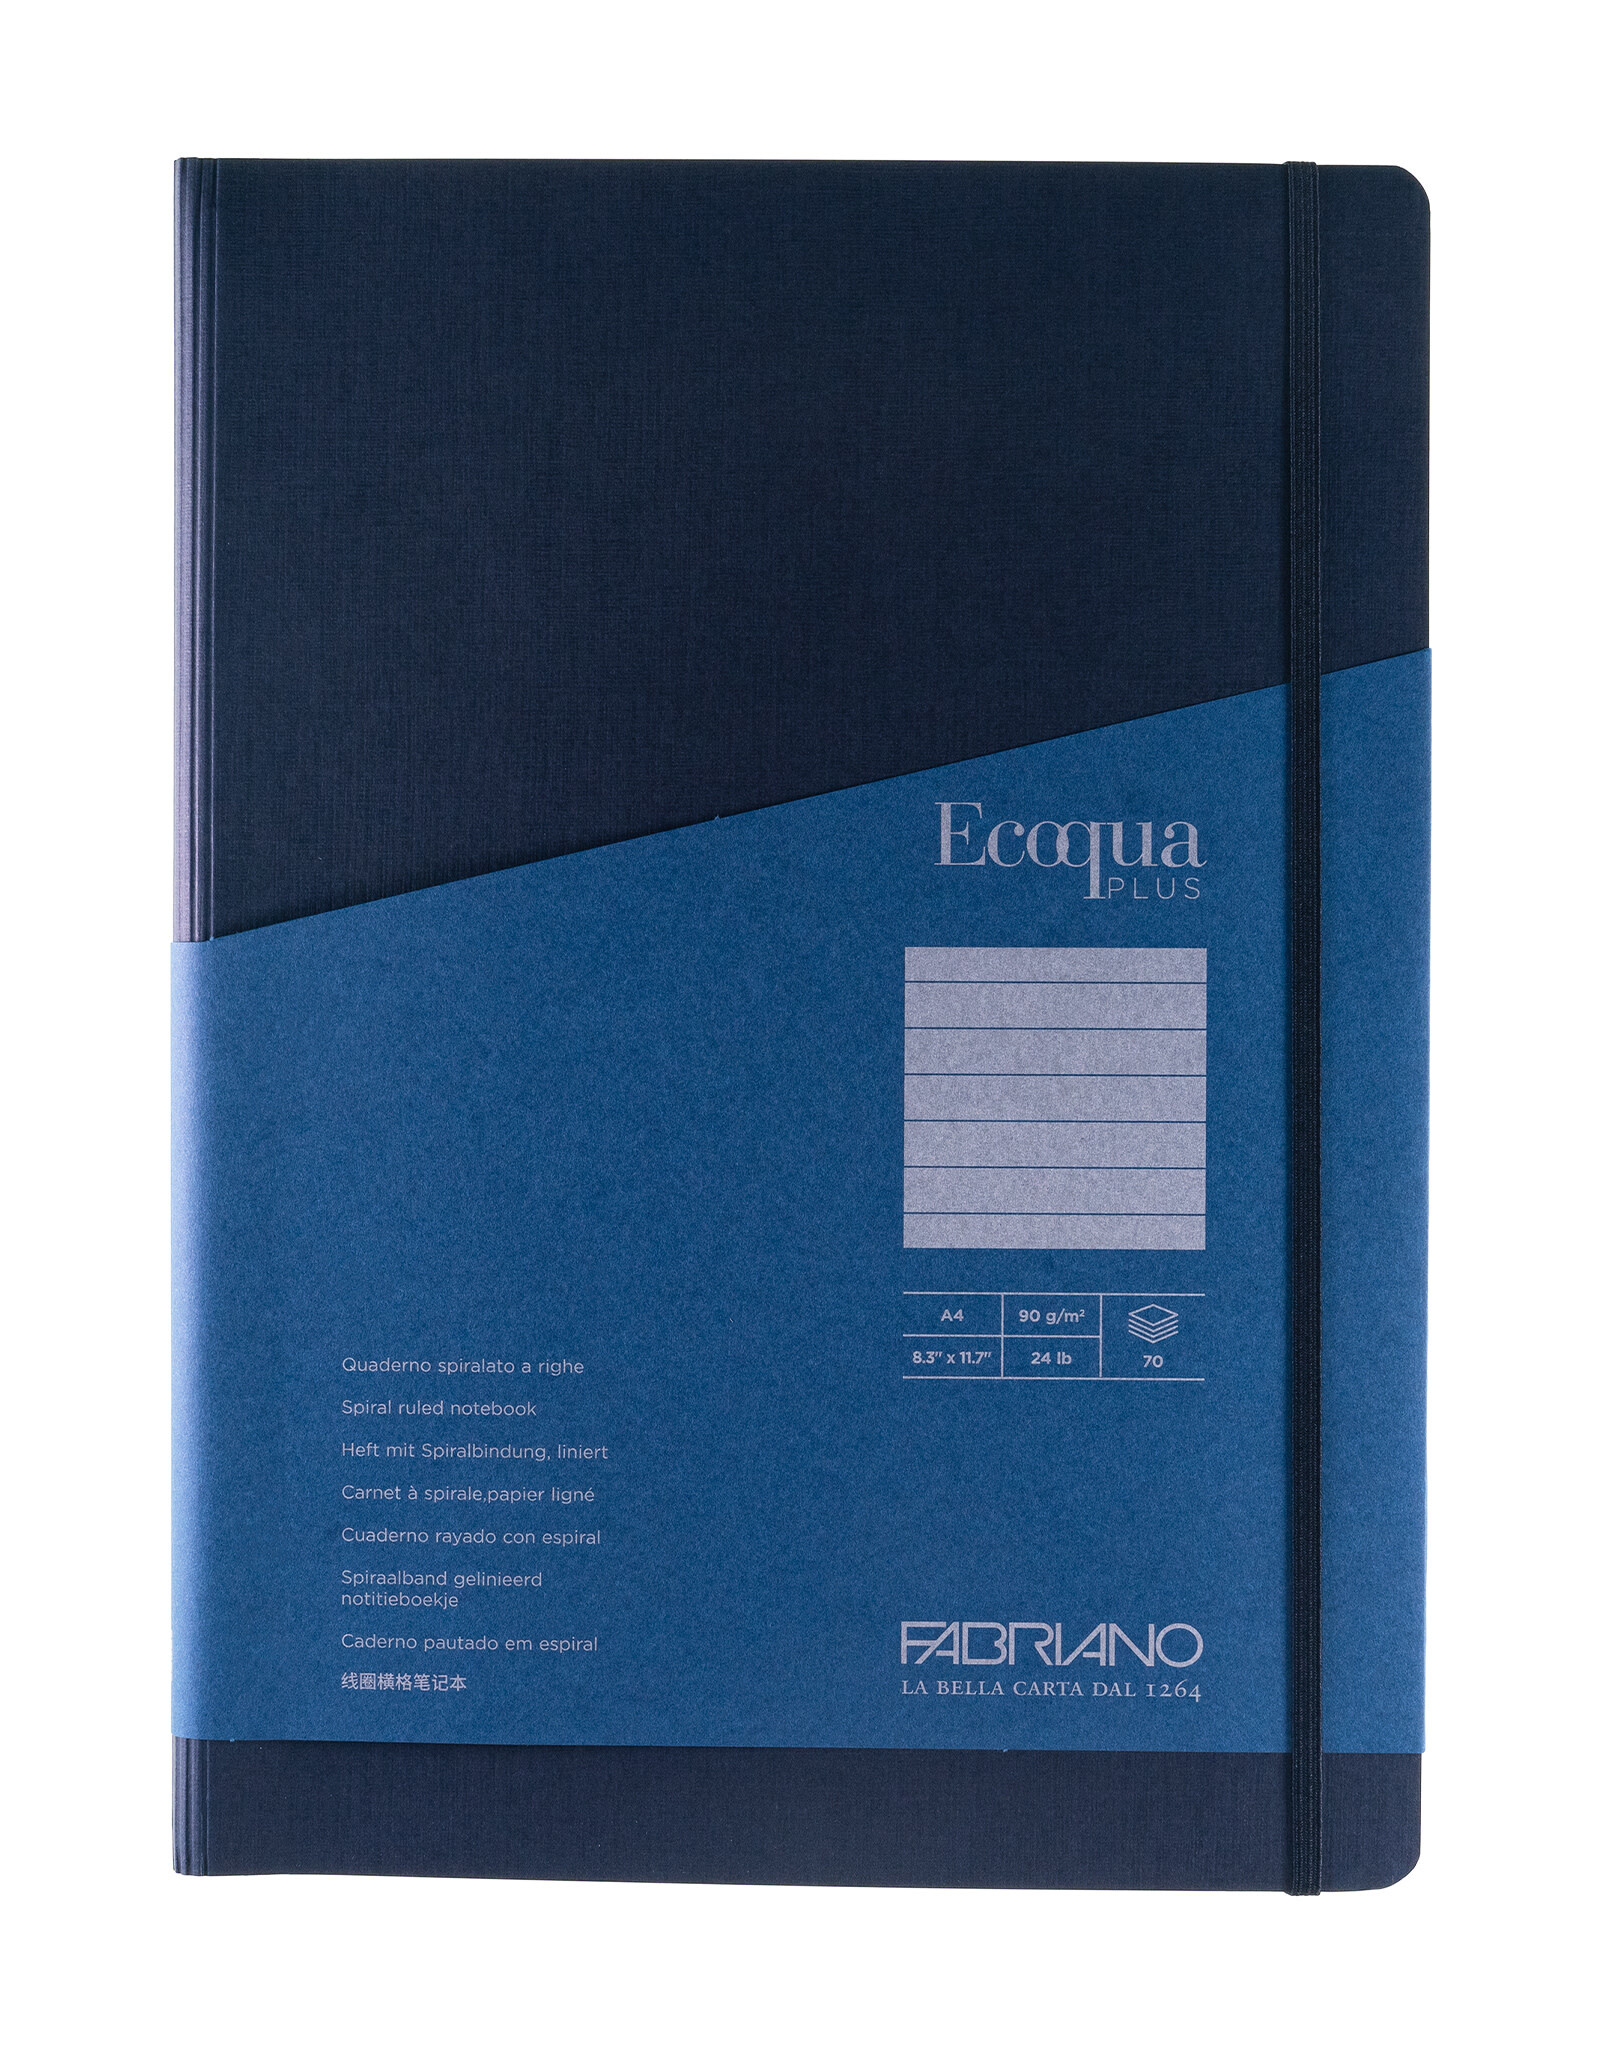 Ecoqua Plus Hidden Spiral Notebook, Navy, A4, Ruled